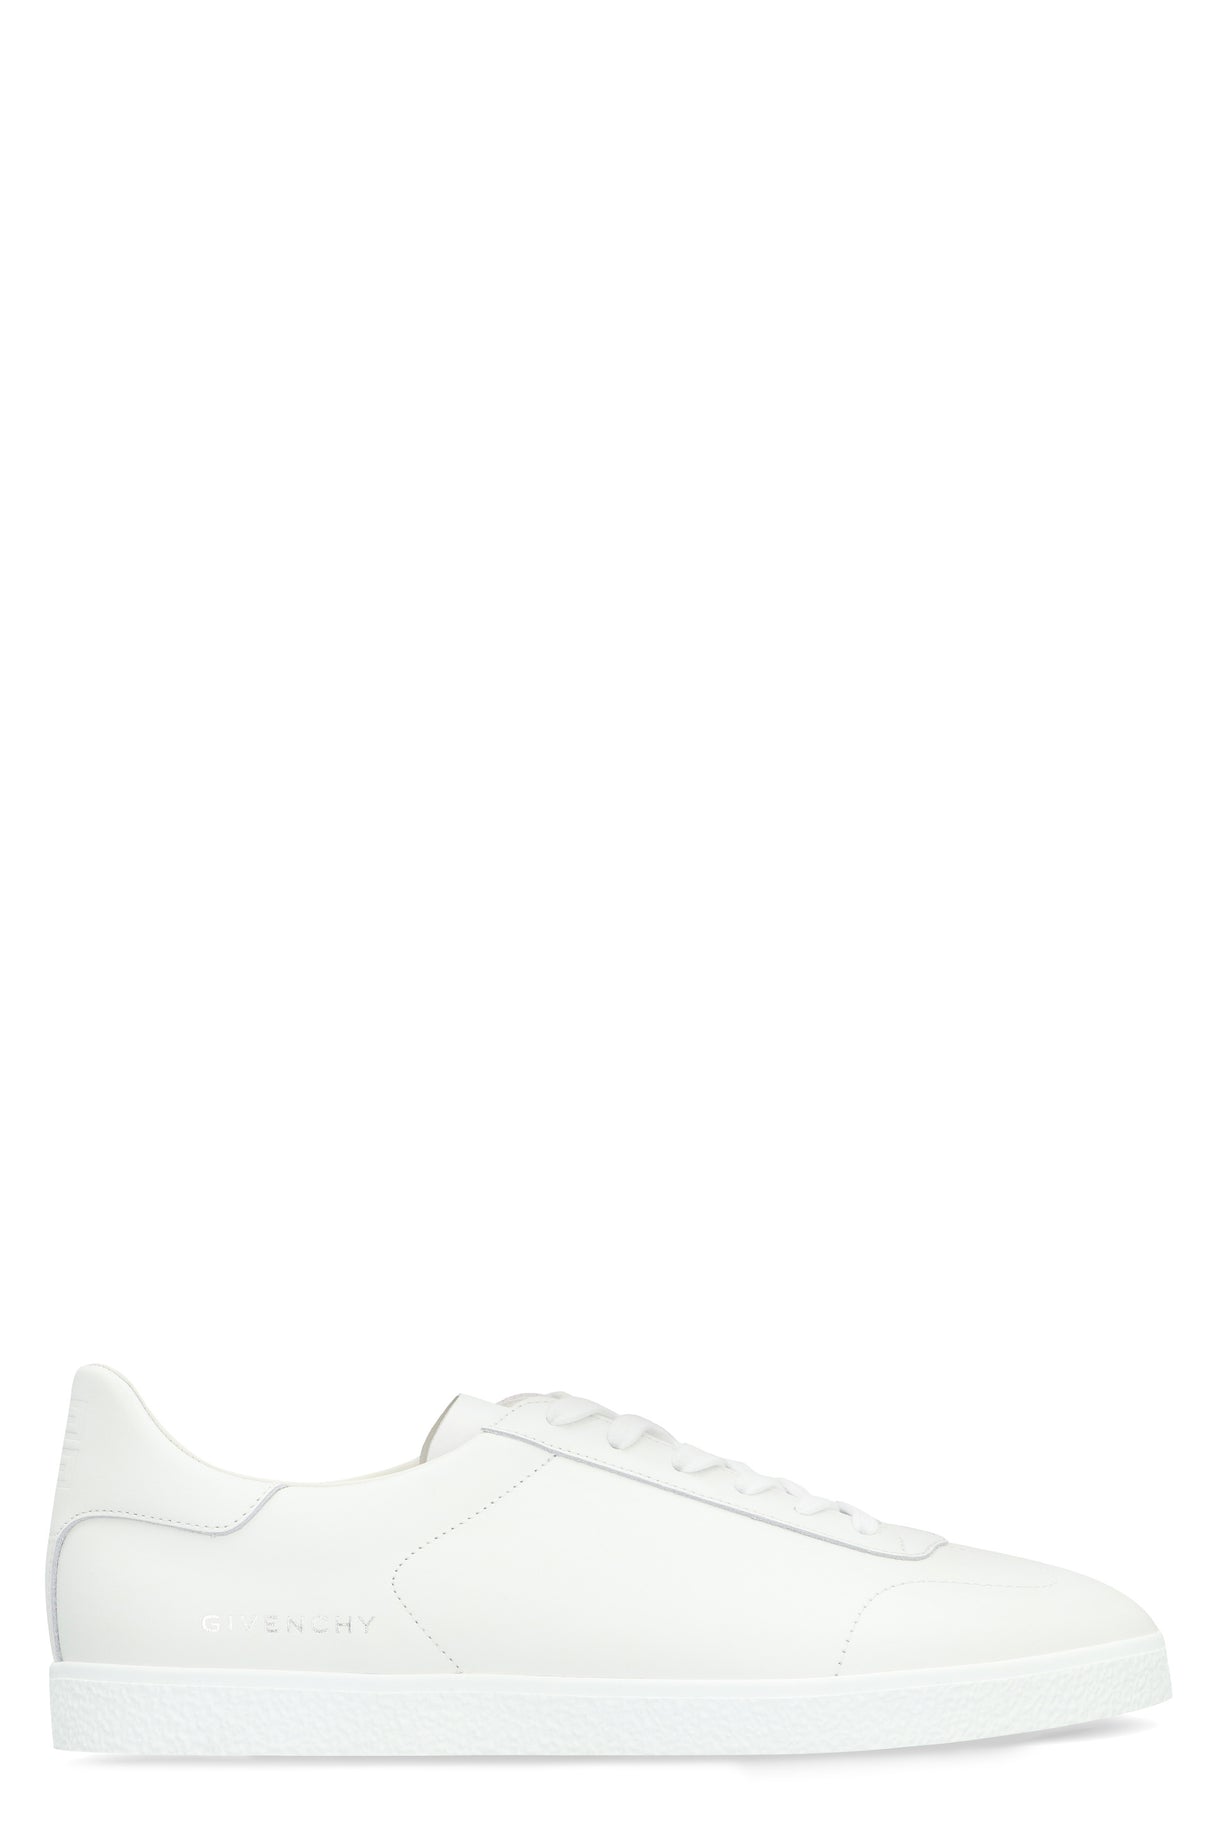 حذاء سنيكرز رجالي من جيفنشي بلون أبيض لموسم الربيع والصيف 24